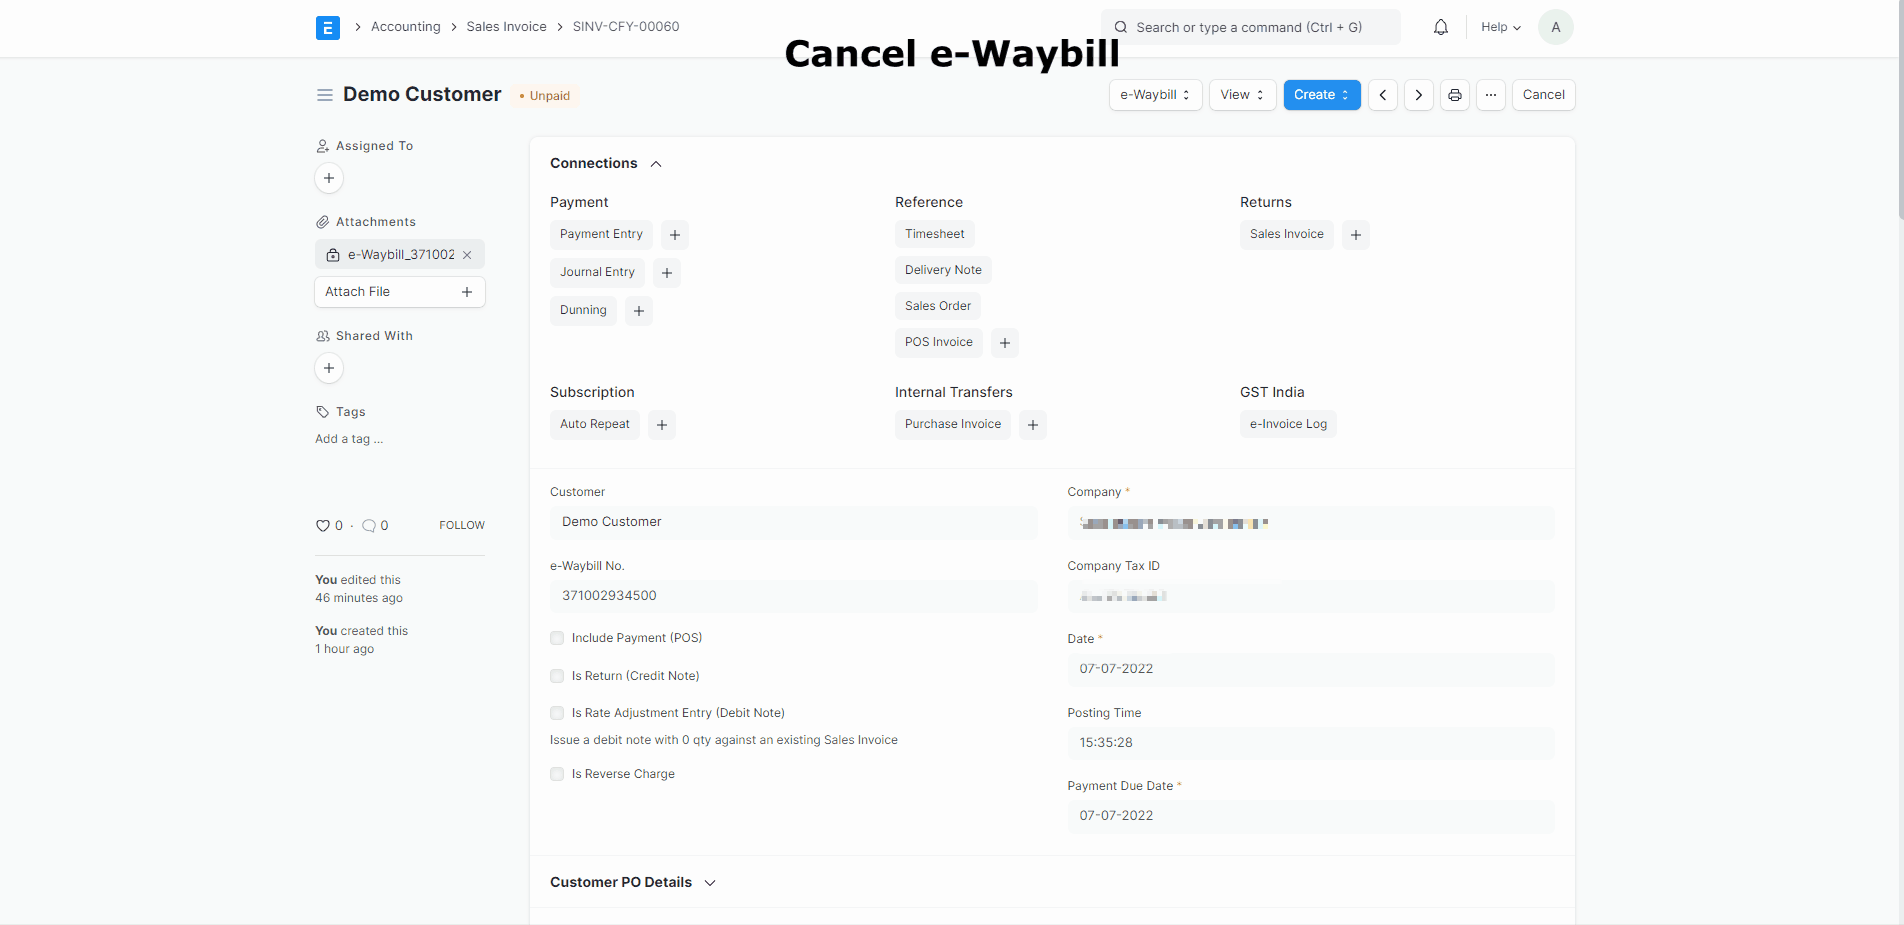 Cancel e-Waybill